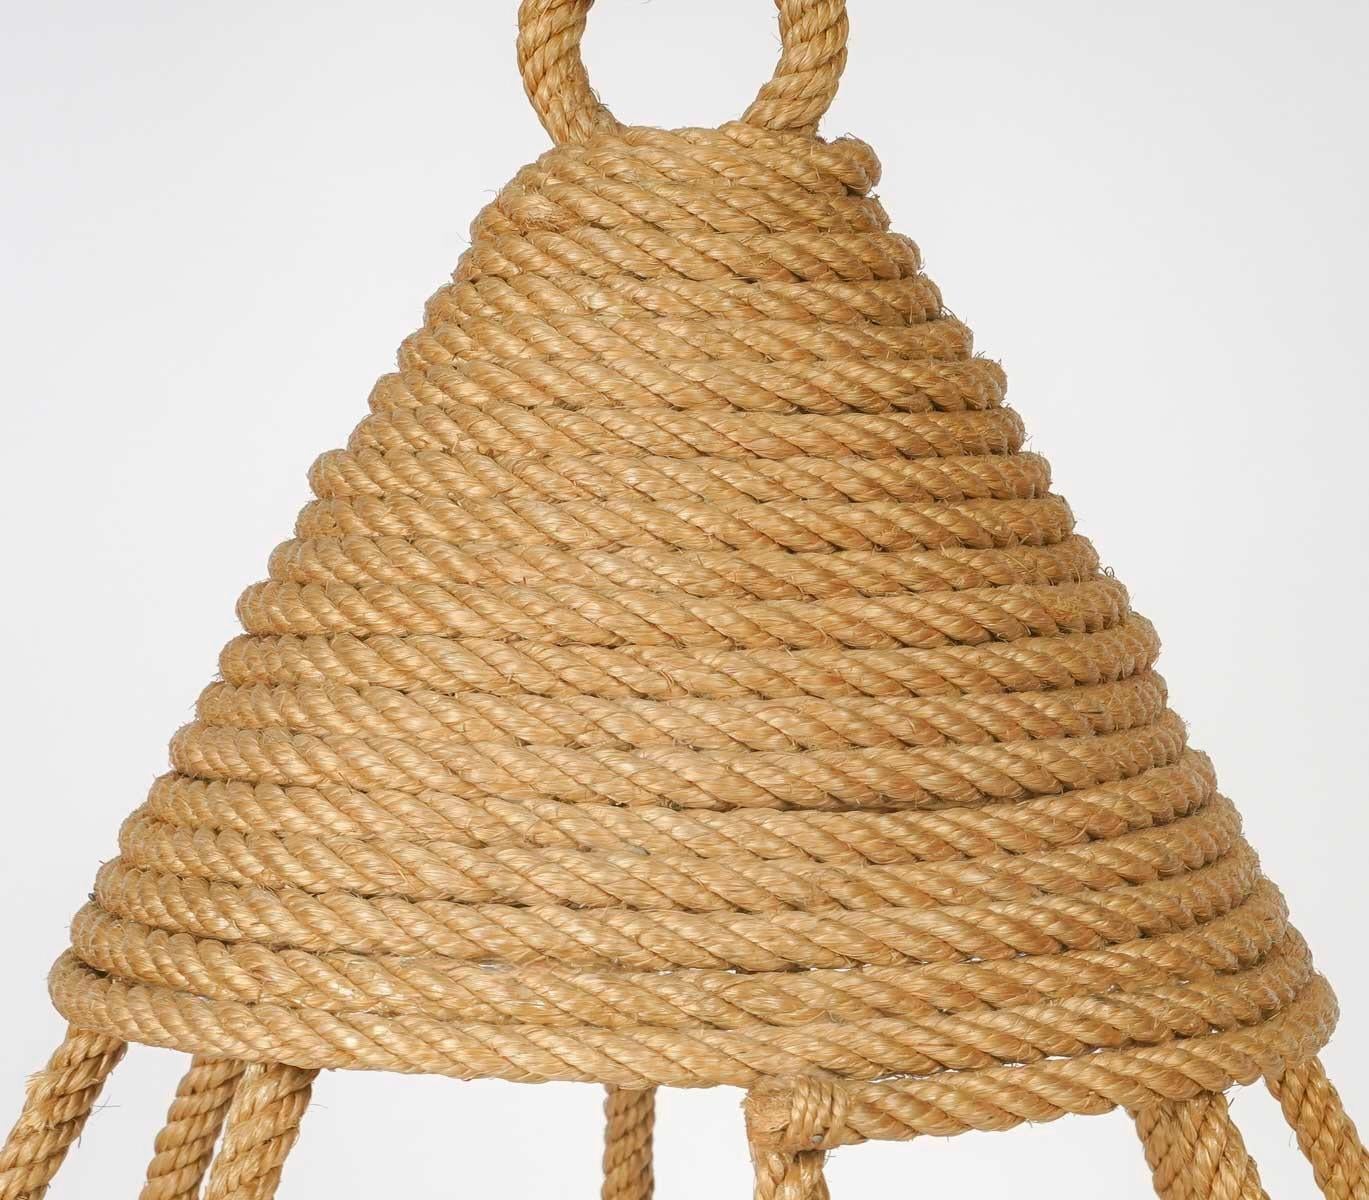 Composé d'une tige de corde centrale sur laquelle repose une lanterne coiffée d'un chapeau de corde pointu enroulé au sommet et décoré à la base de tiges de corde courbes placées verticalement, formant une cage autour de la lanterne.
En bas, les